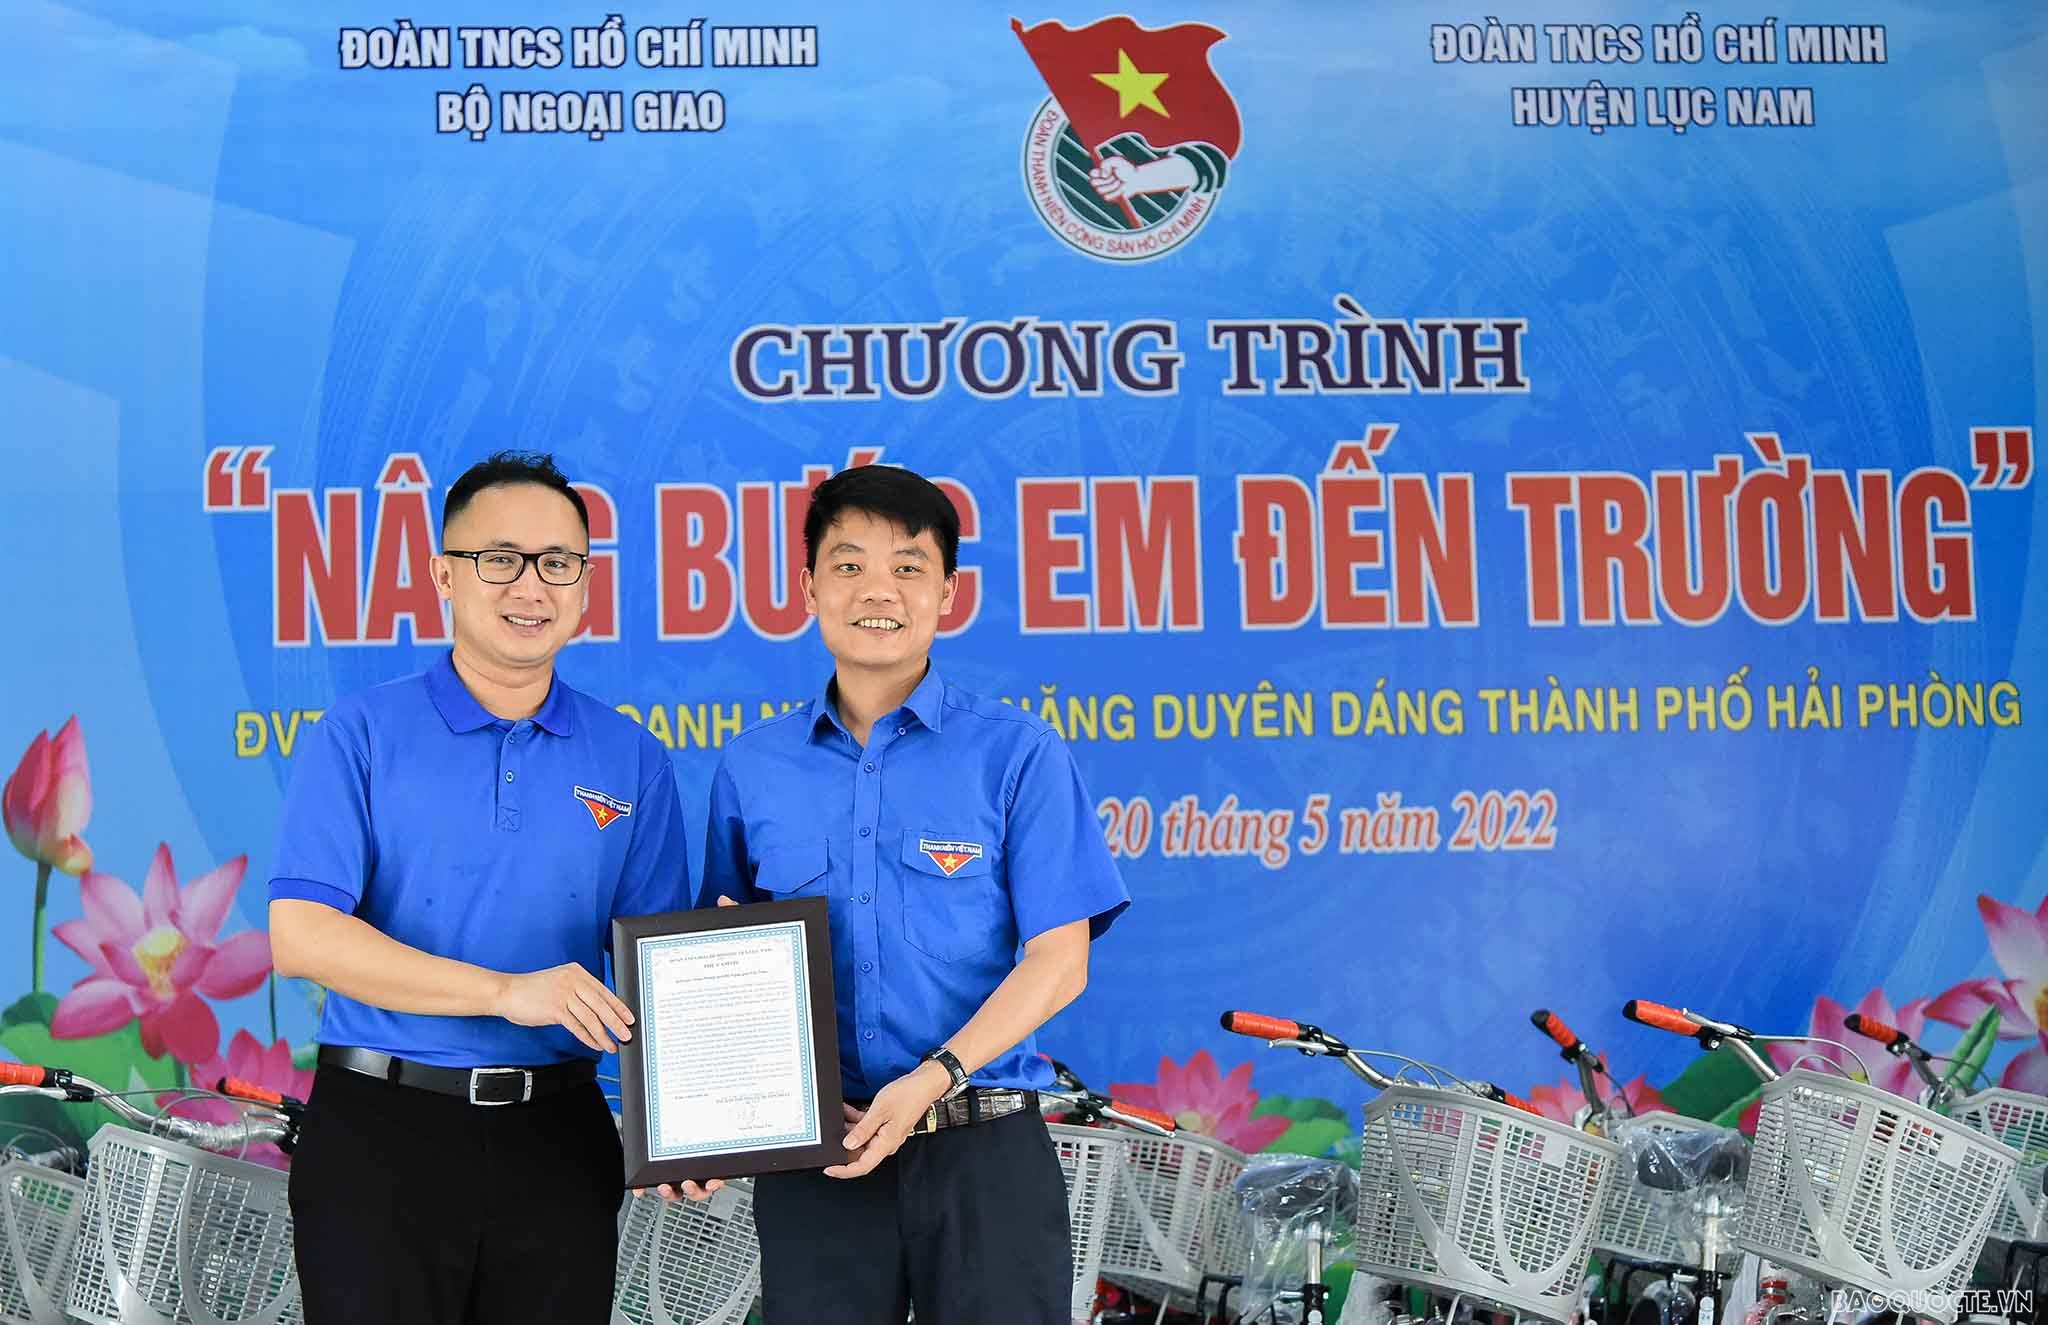 Thanh niên Ngoại giao trao tặng 100 chiếc xe đạp cho học sinh có hoàn cảnh khó khăn ở Bắc Giang